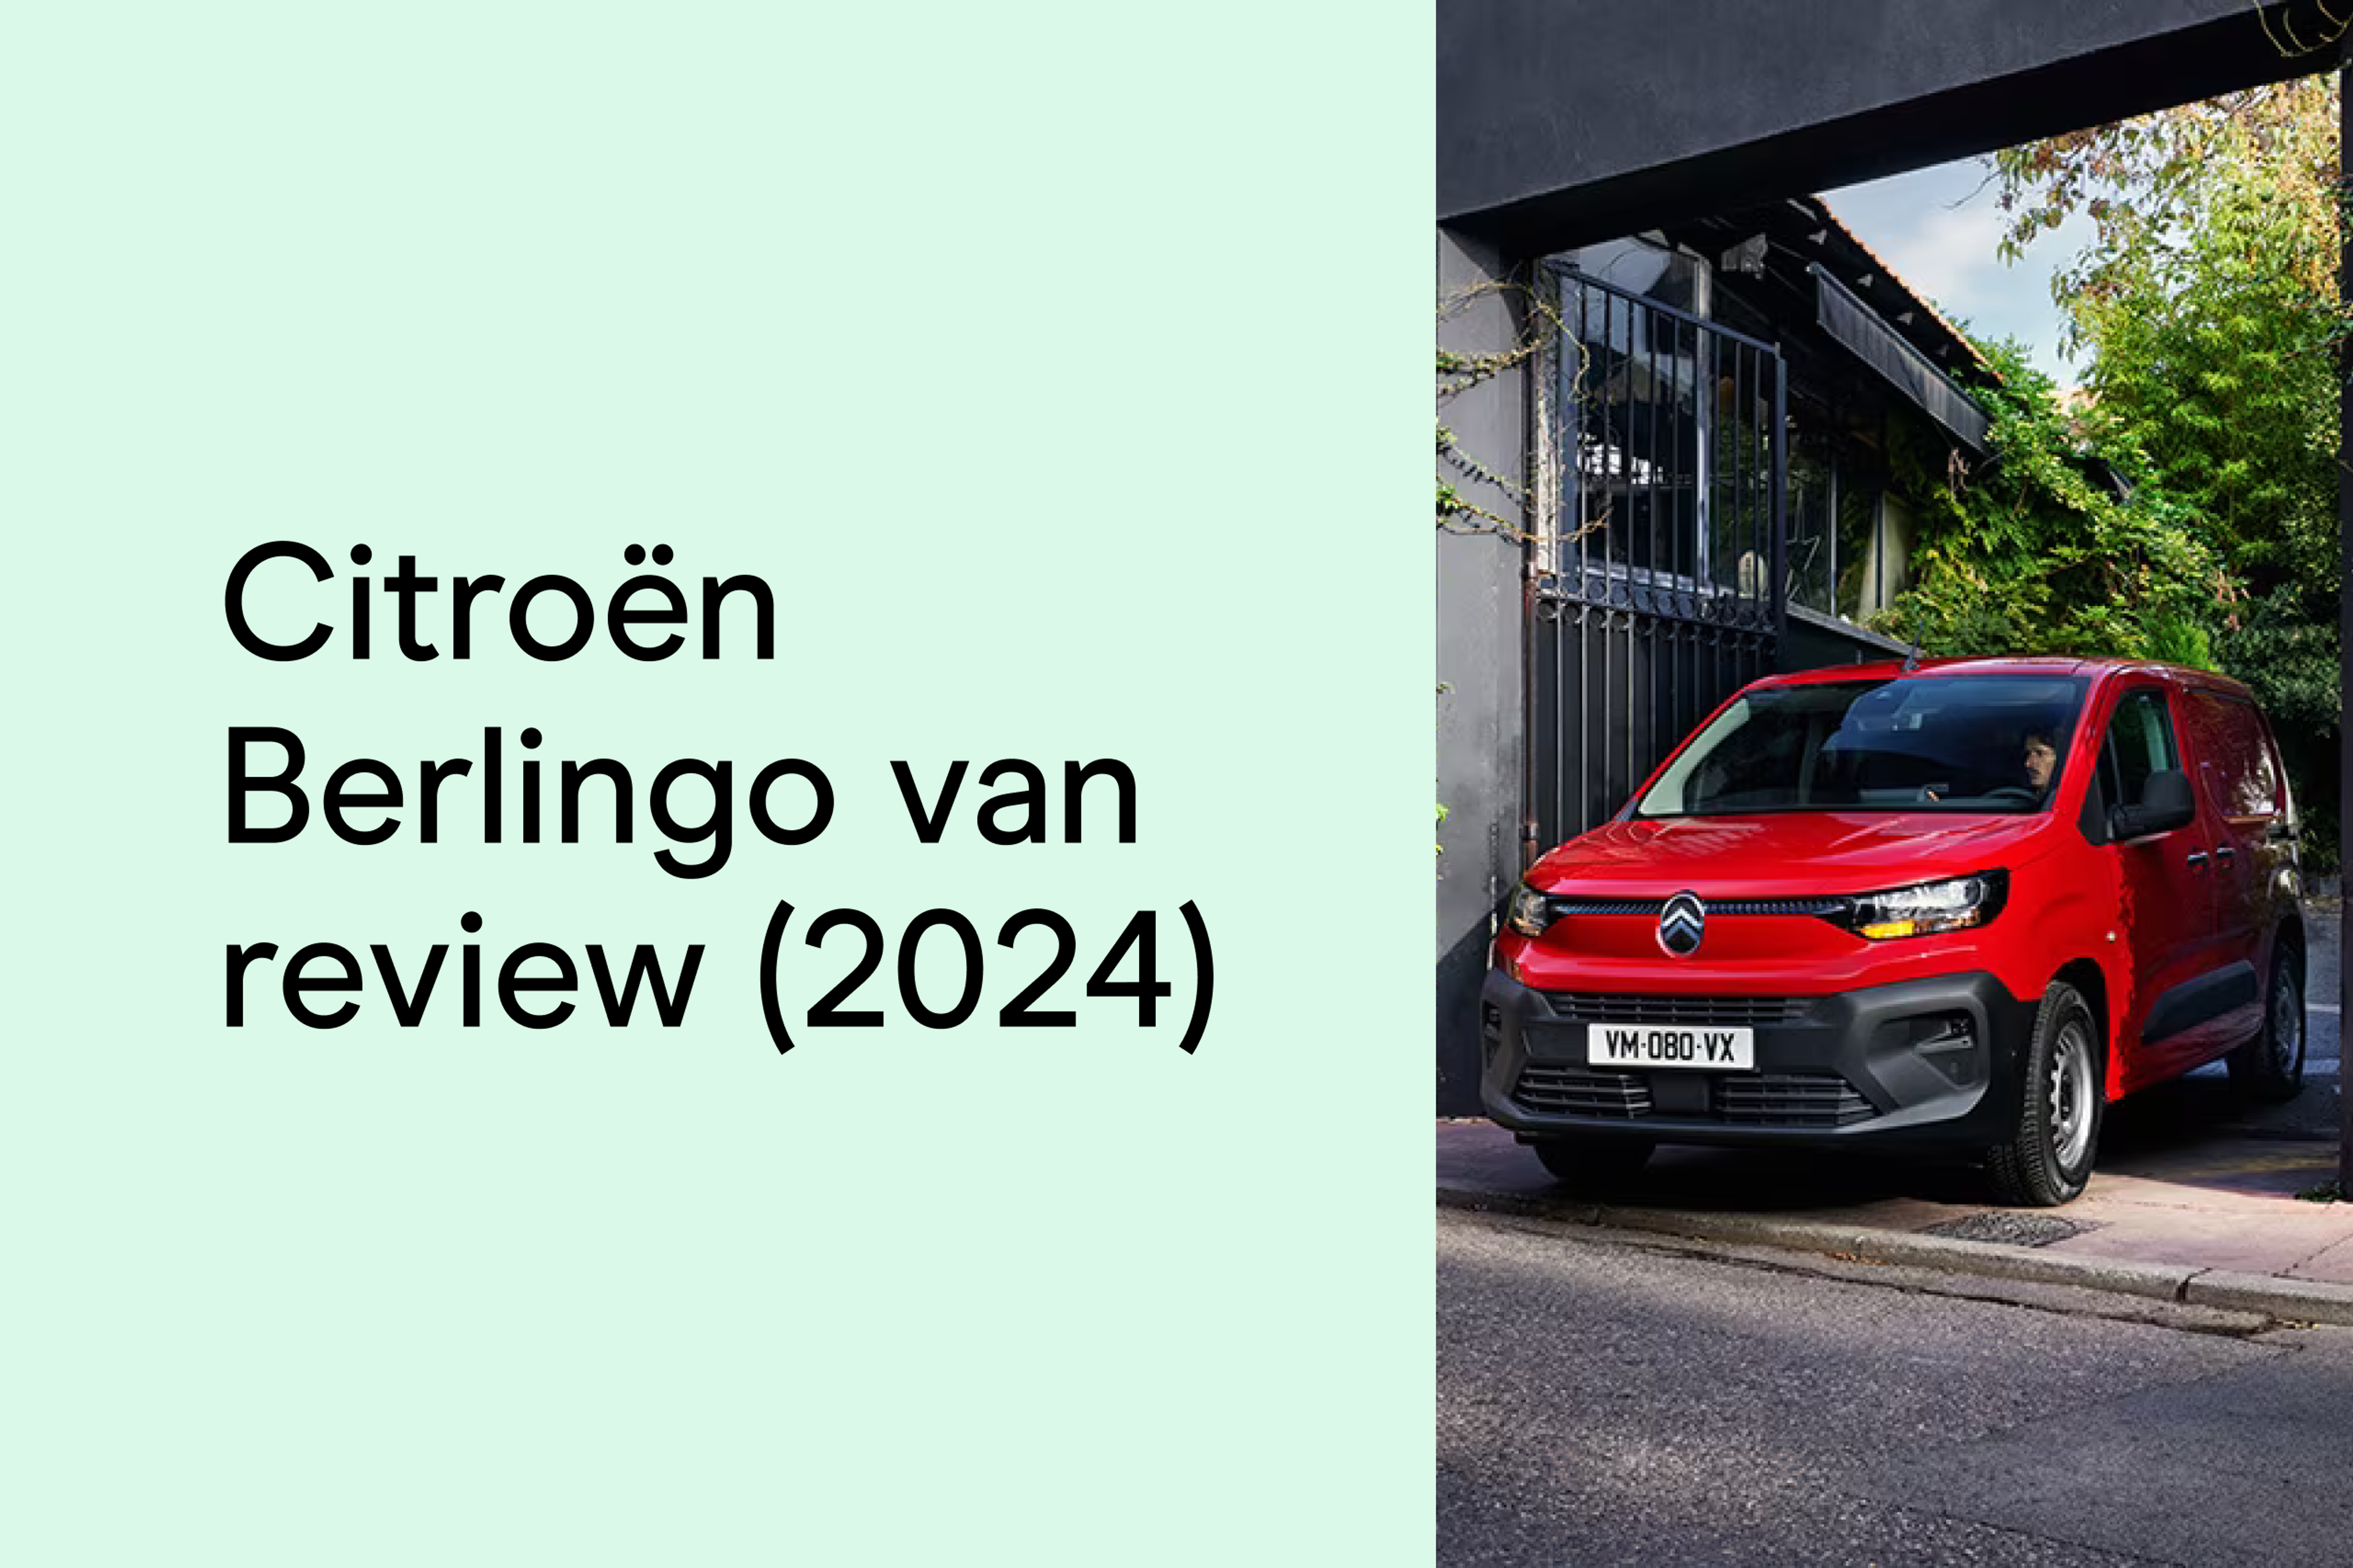 Citroën Berlingo van review (2024)